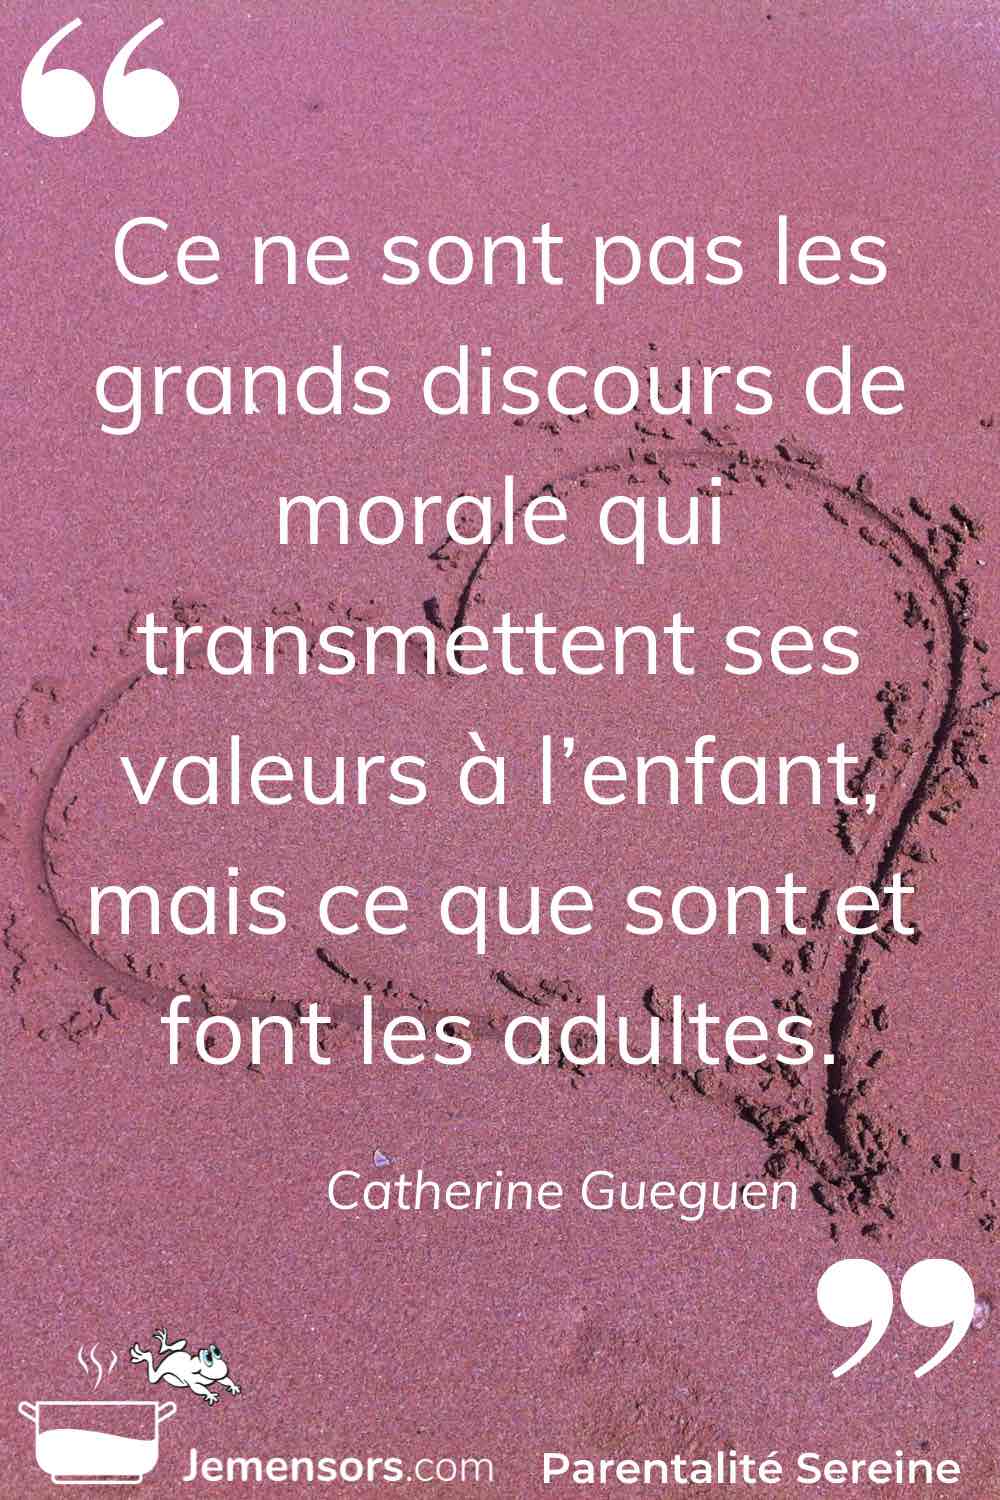 "Ce ne sont pas les grands discours de morale qui transmettent ses valeurs à l’enfant, mais ce que sont et font les adultes." Catherine Gueguen